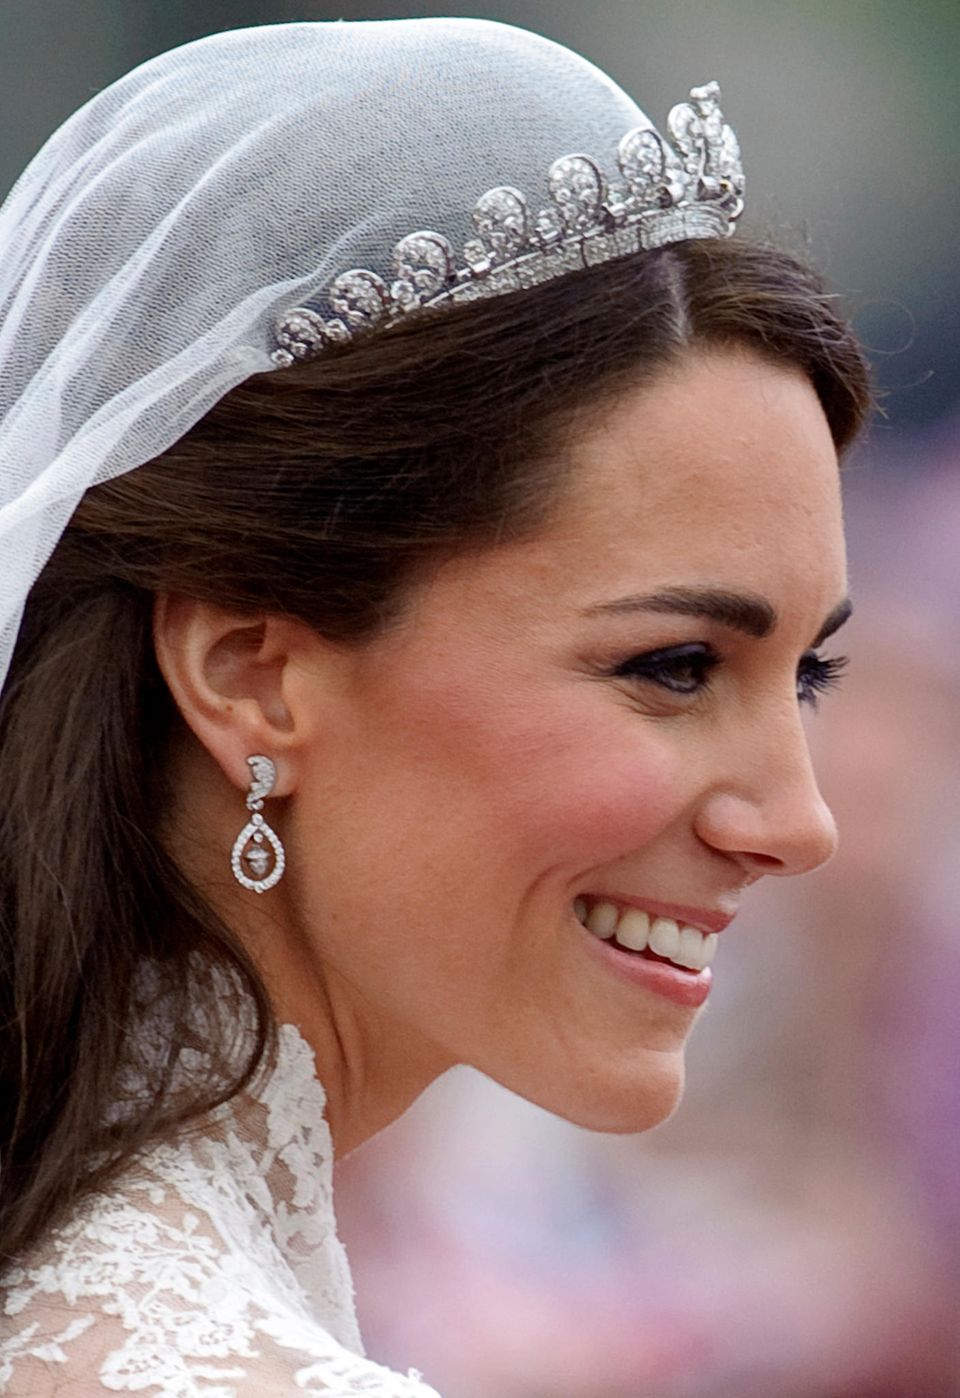 Makeup-Looks der Royals: Herzogin Kate mit Hochzeitsmakeup